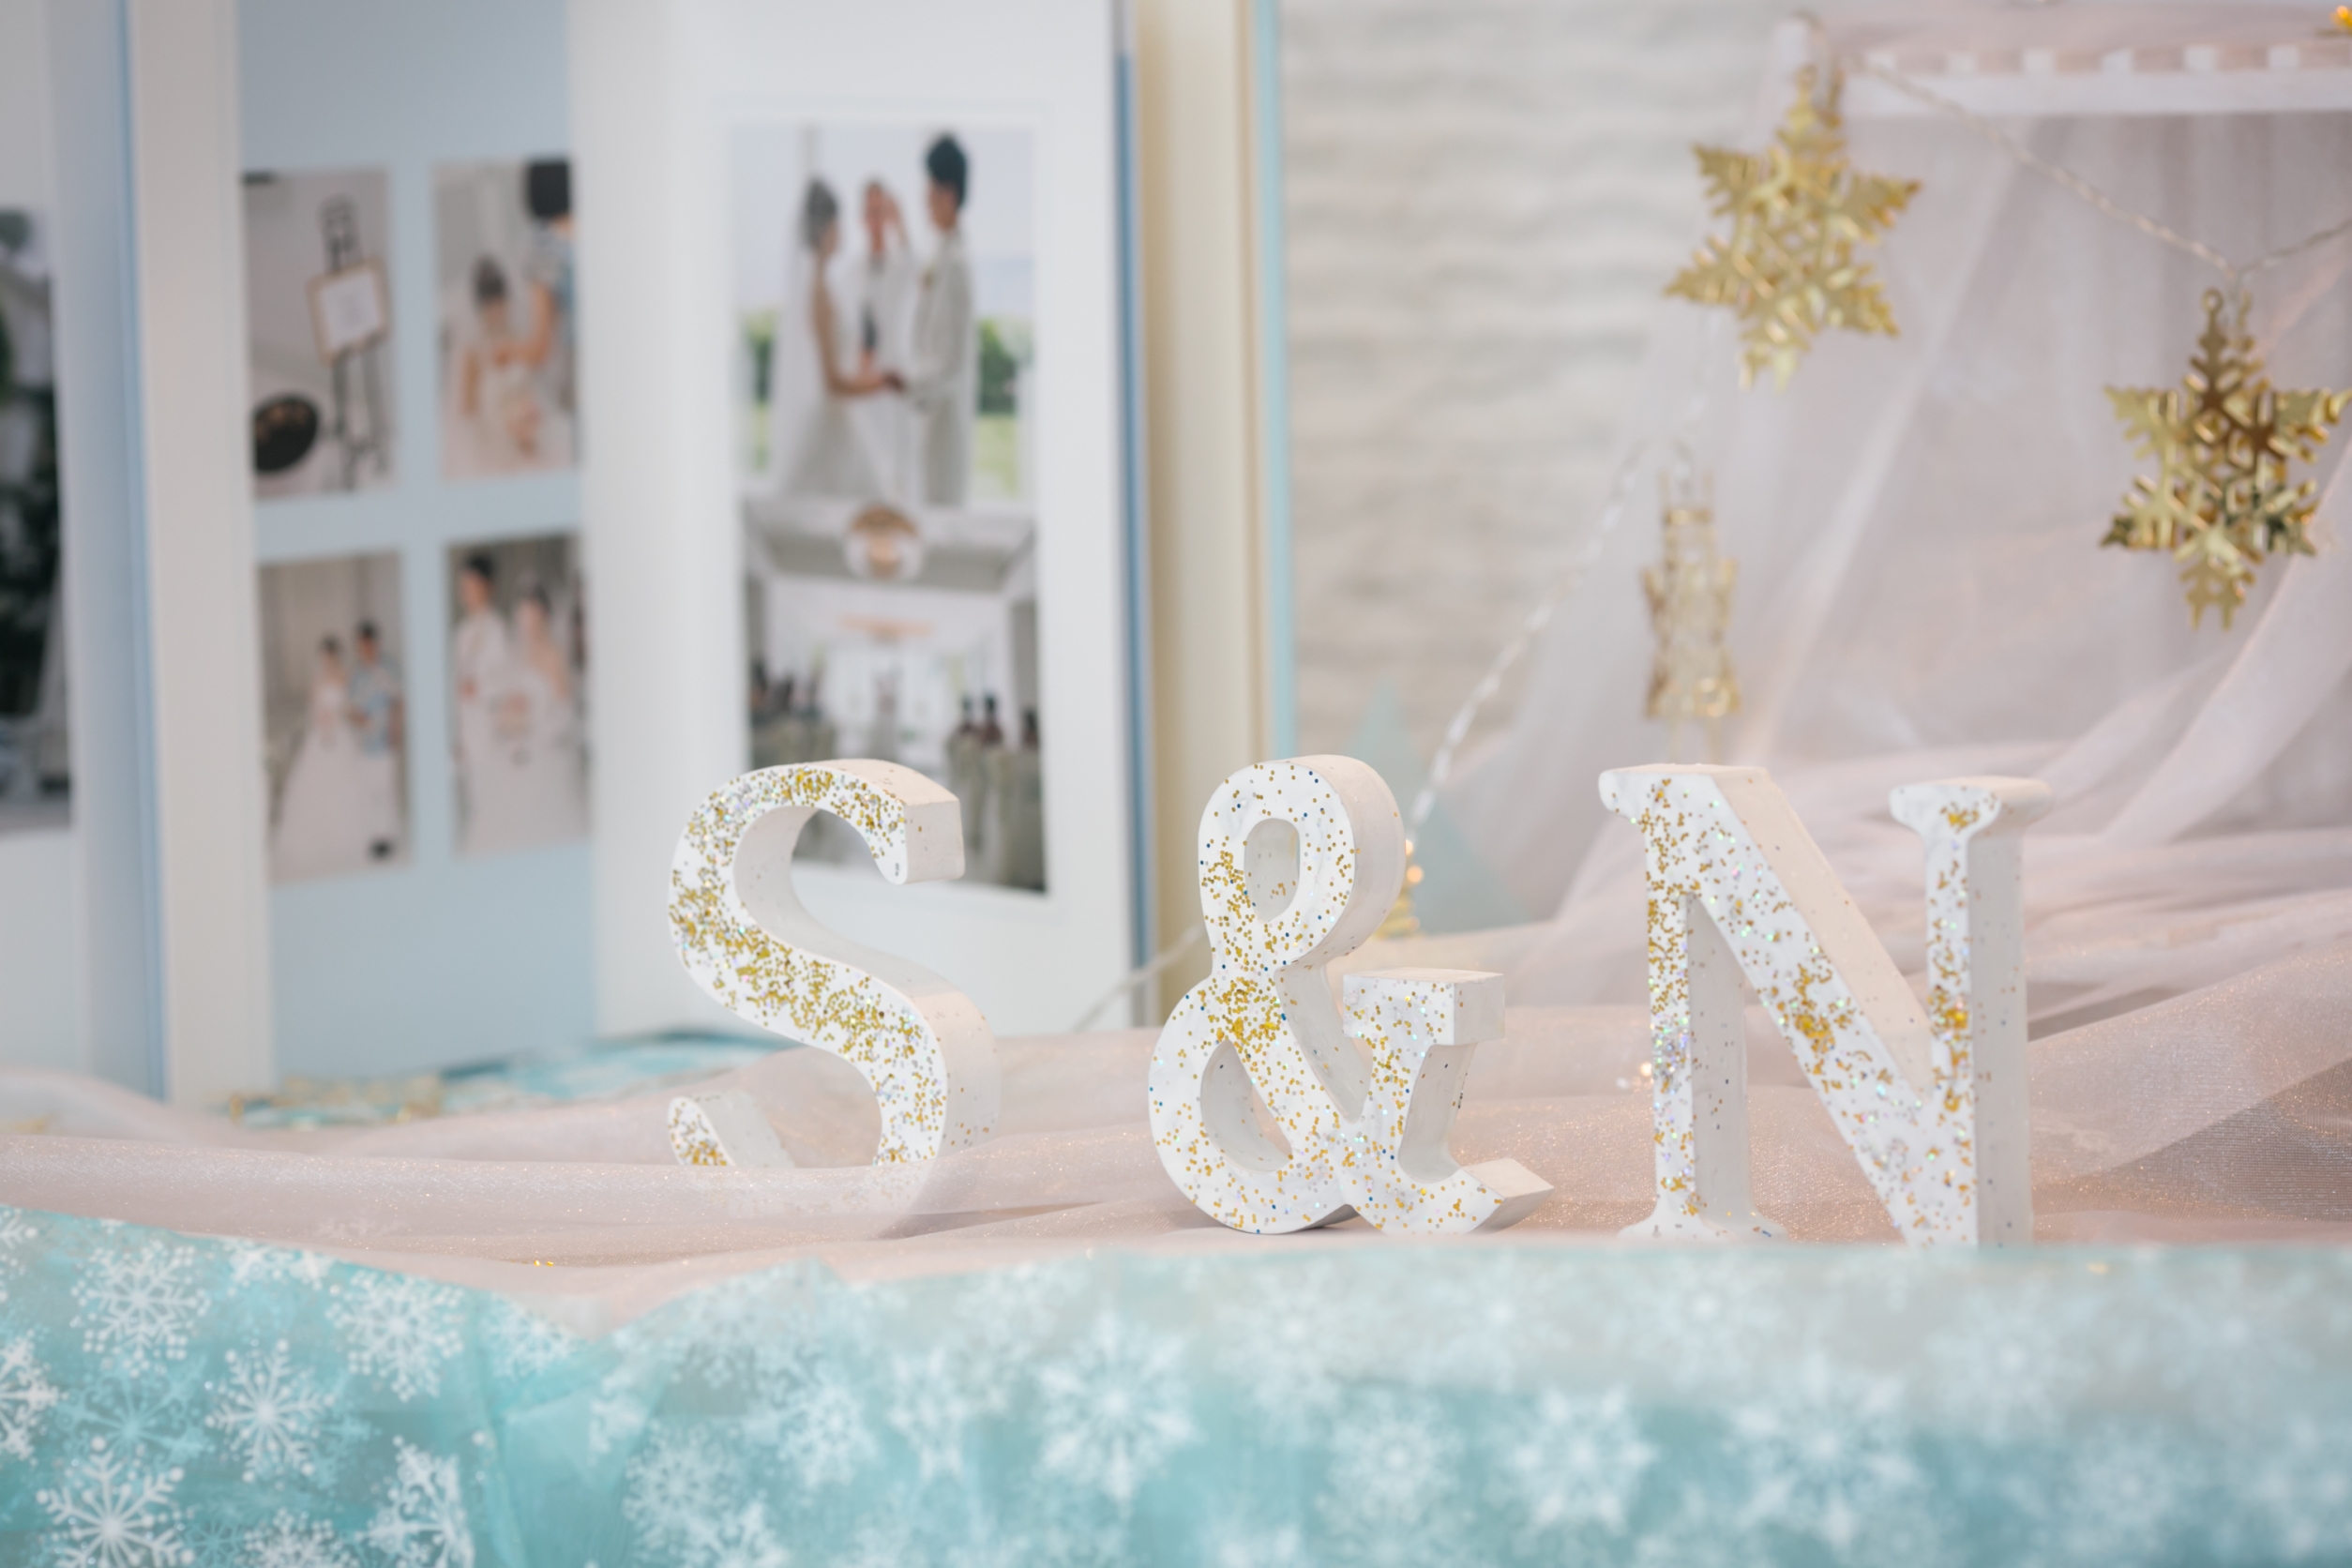 雪がテーマの結婚パーティー 白銀の世界に包まれる空間でオリジナルウェディング 1 5次会や会費制結婚式 記念日づくりはneo Flag